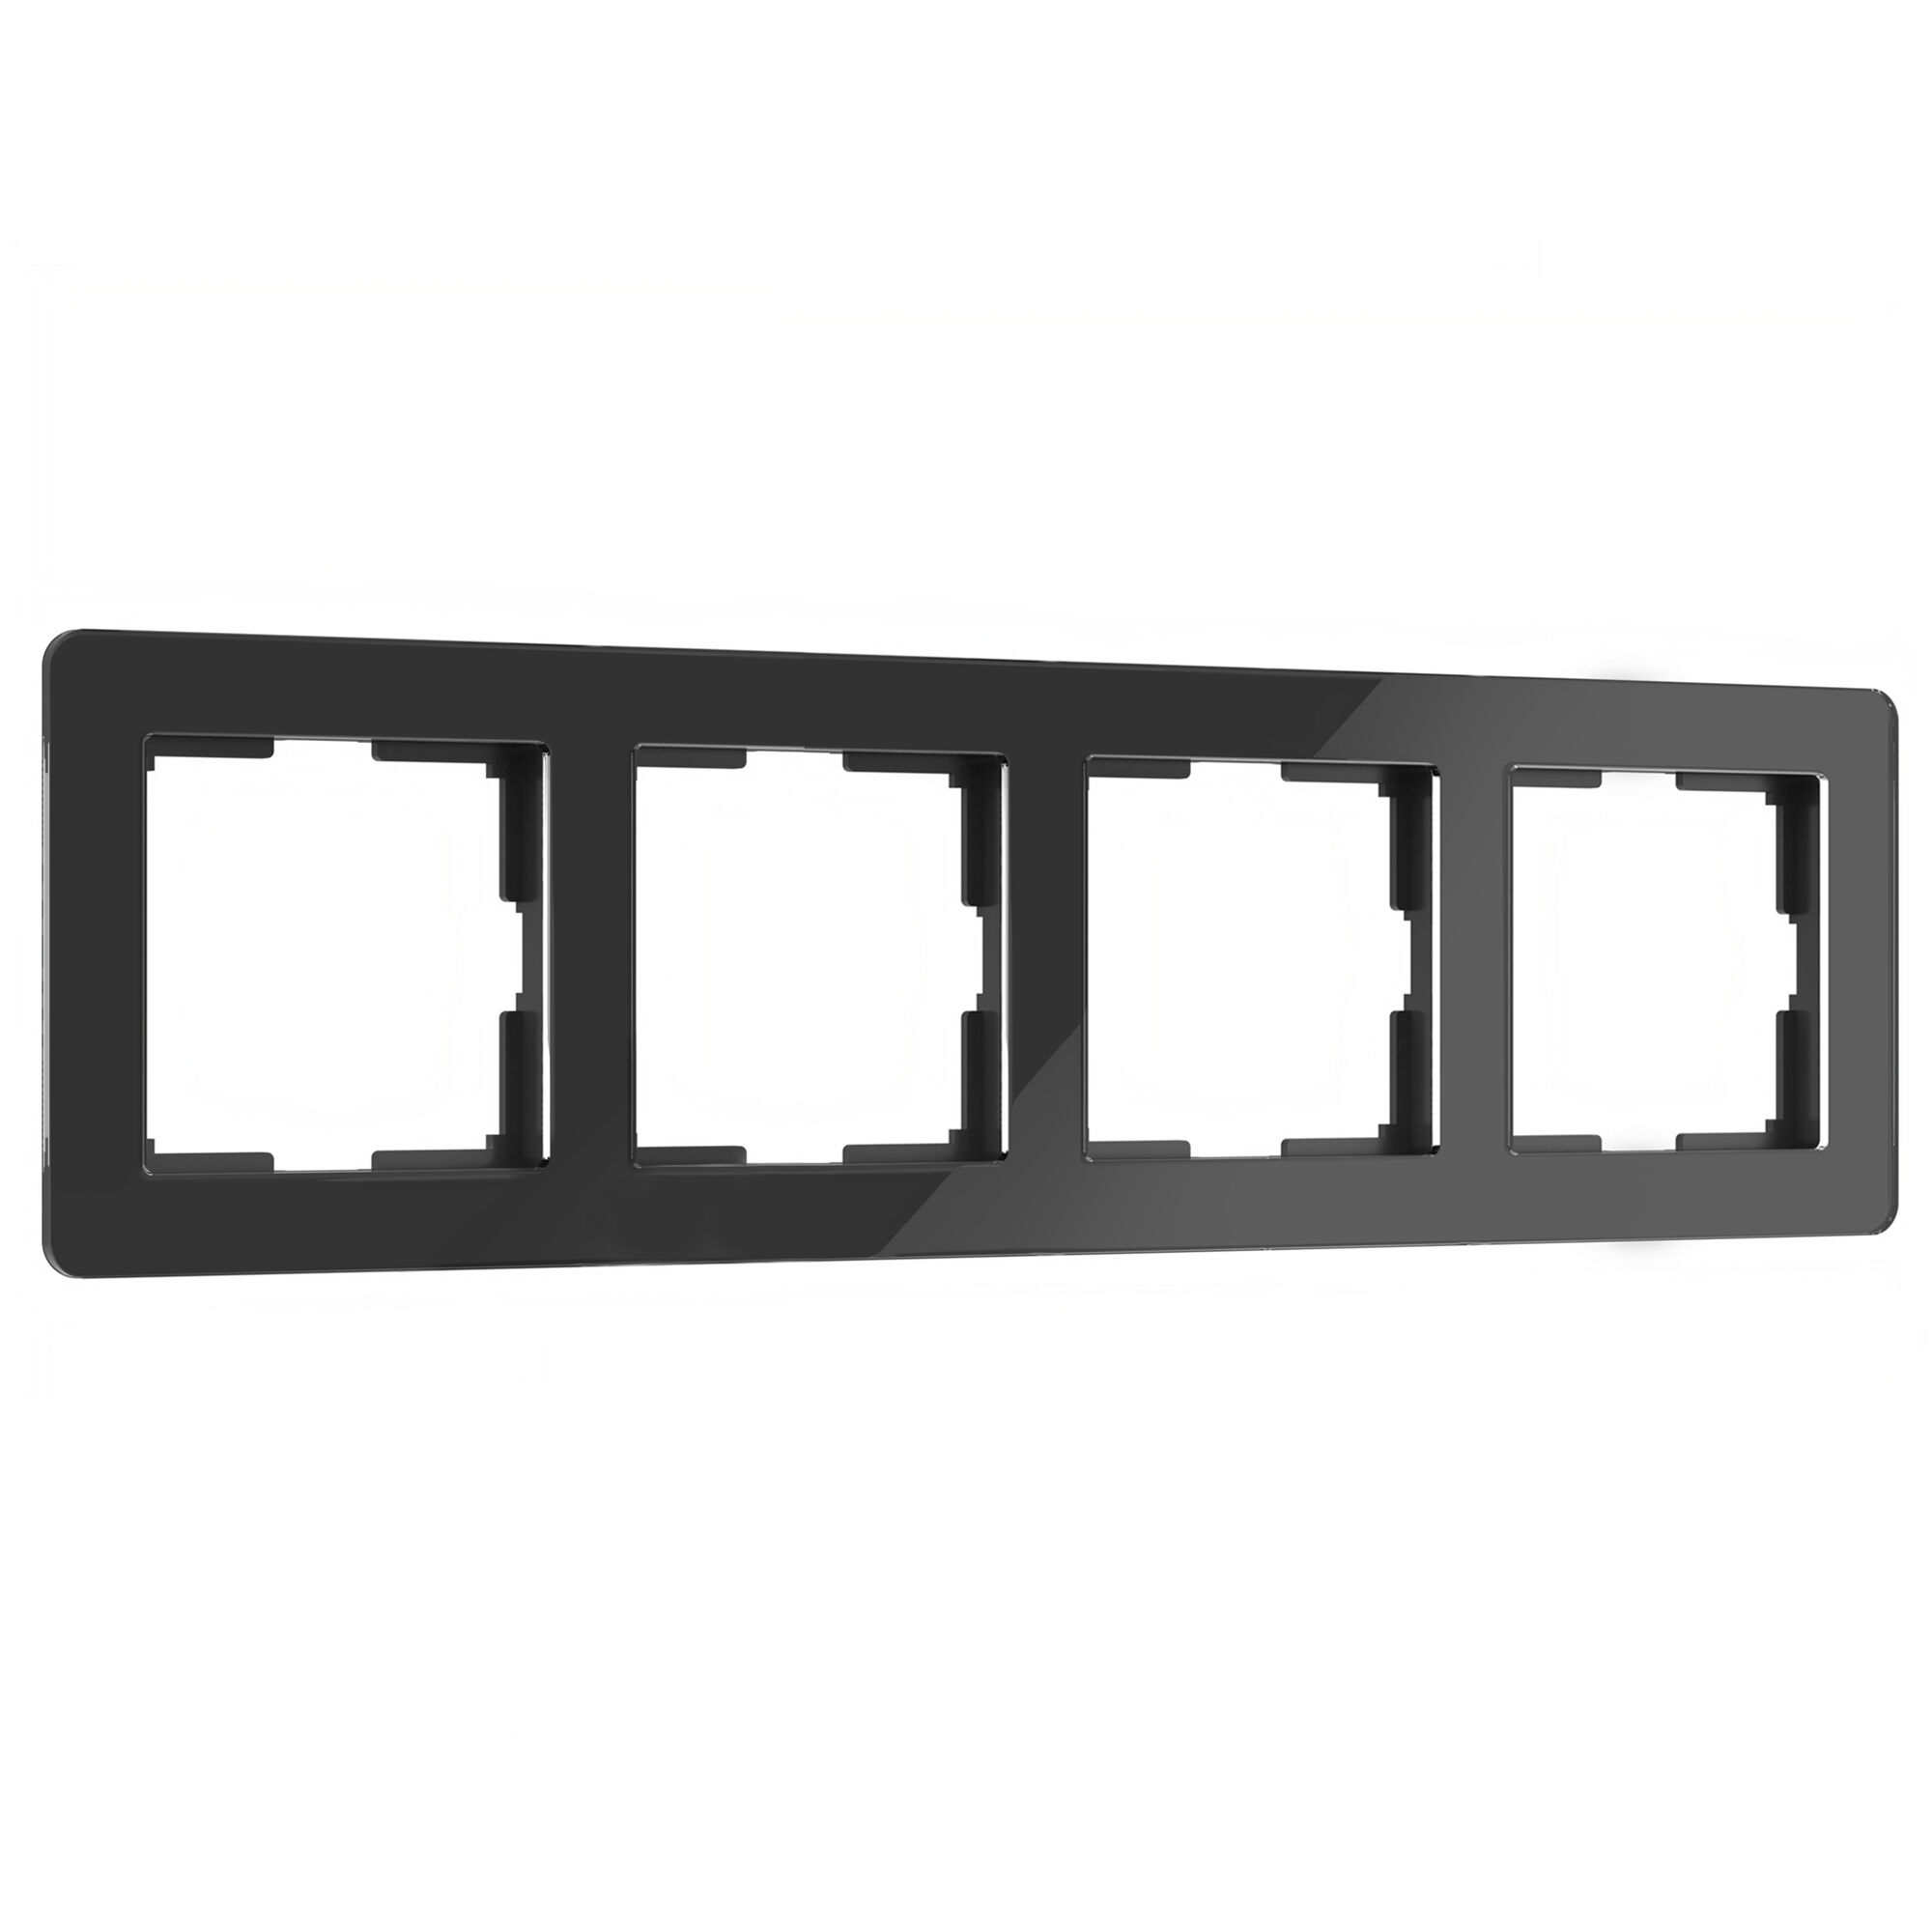 Рамка для розетки и выключателя на 4 поста Werkel Acrylic W0042708 черный из акрила рамка на 4 поста графит w0042104 werkel